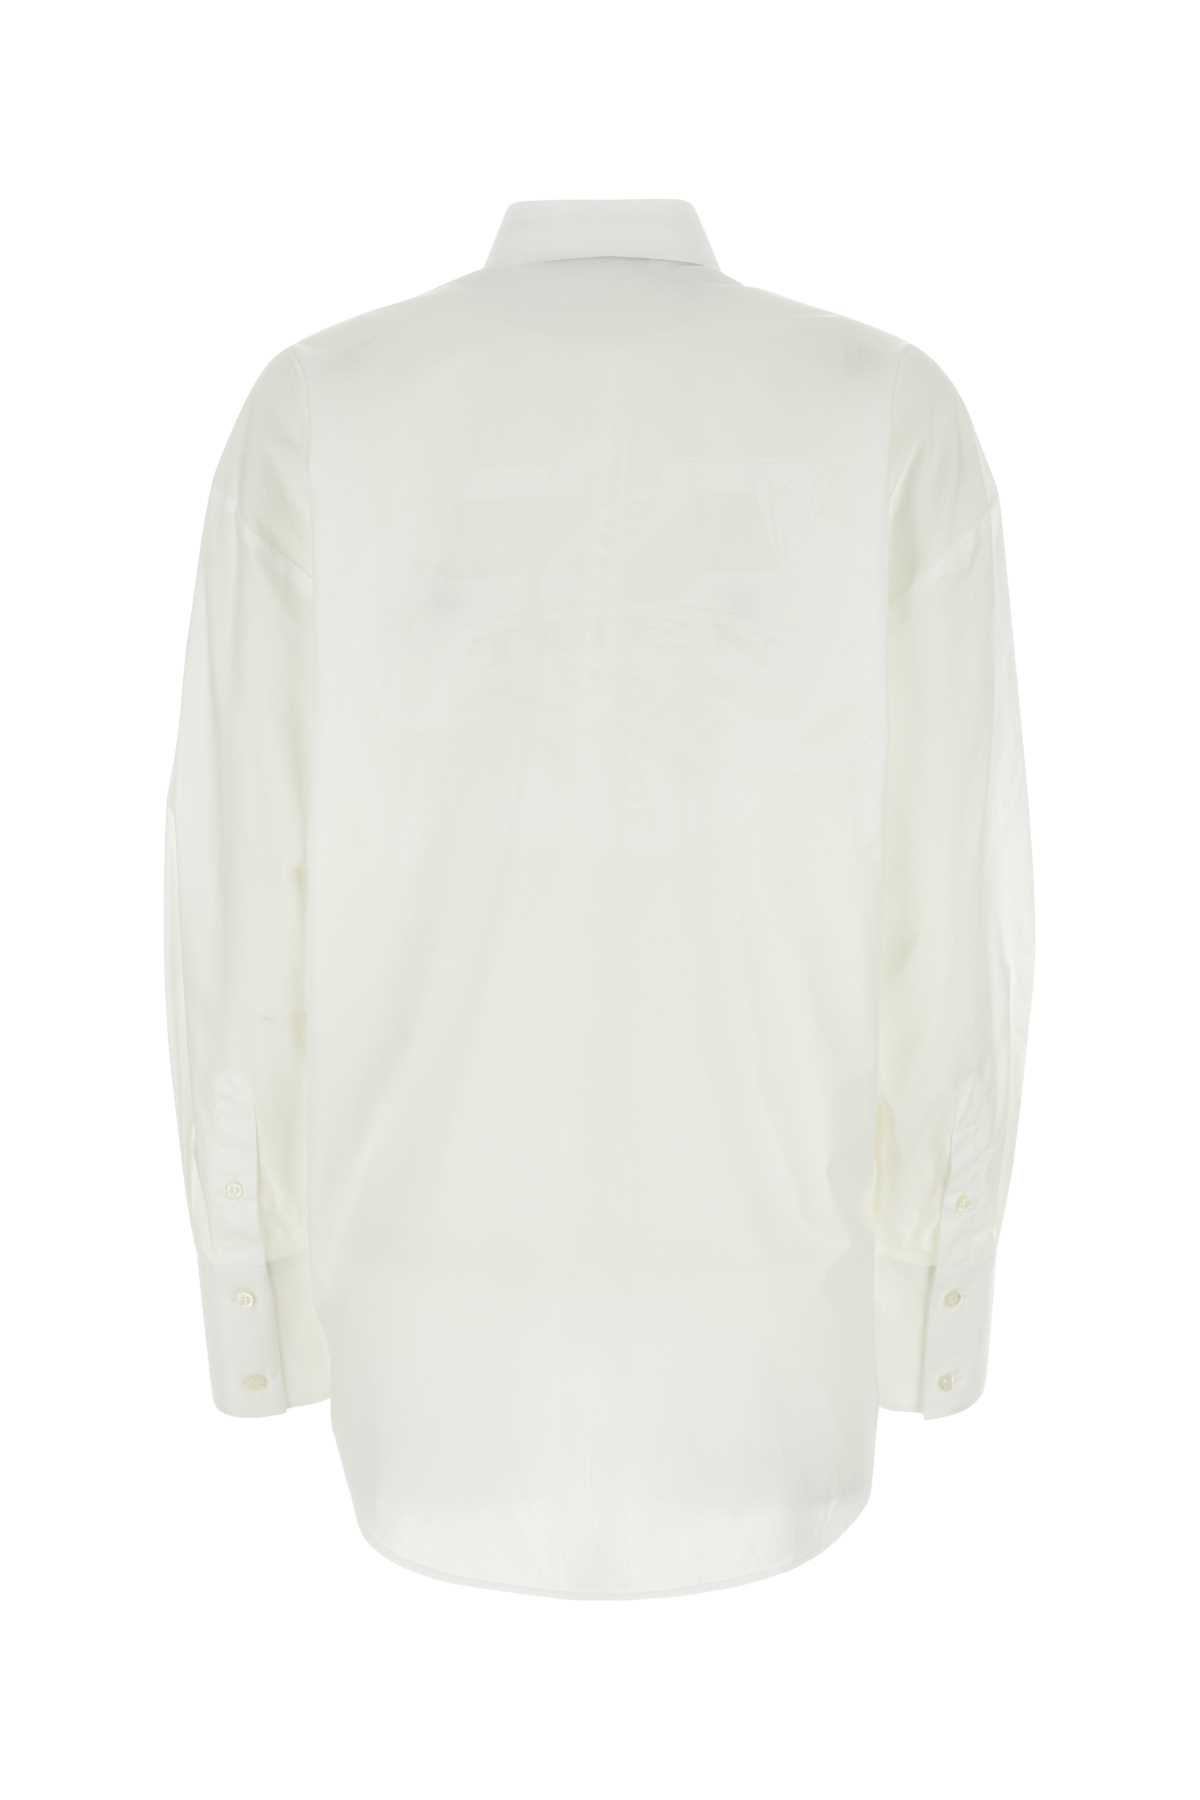 Msgm White Poplin Shirt In White01